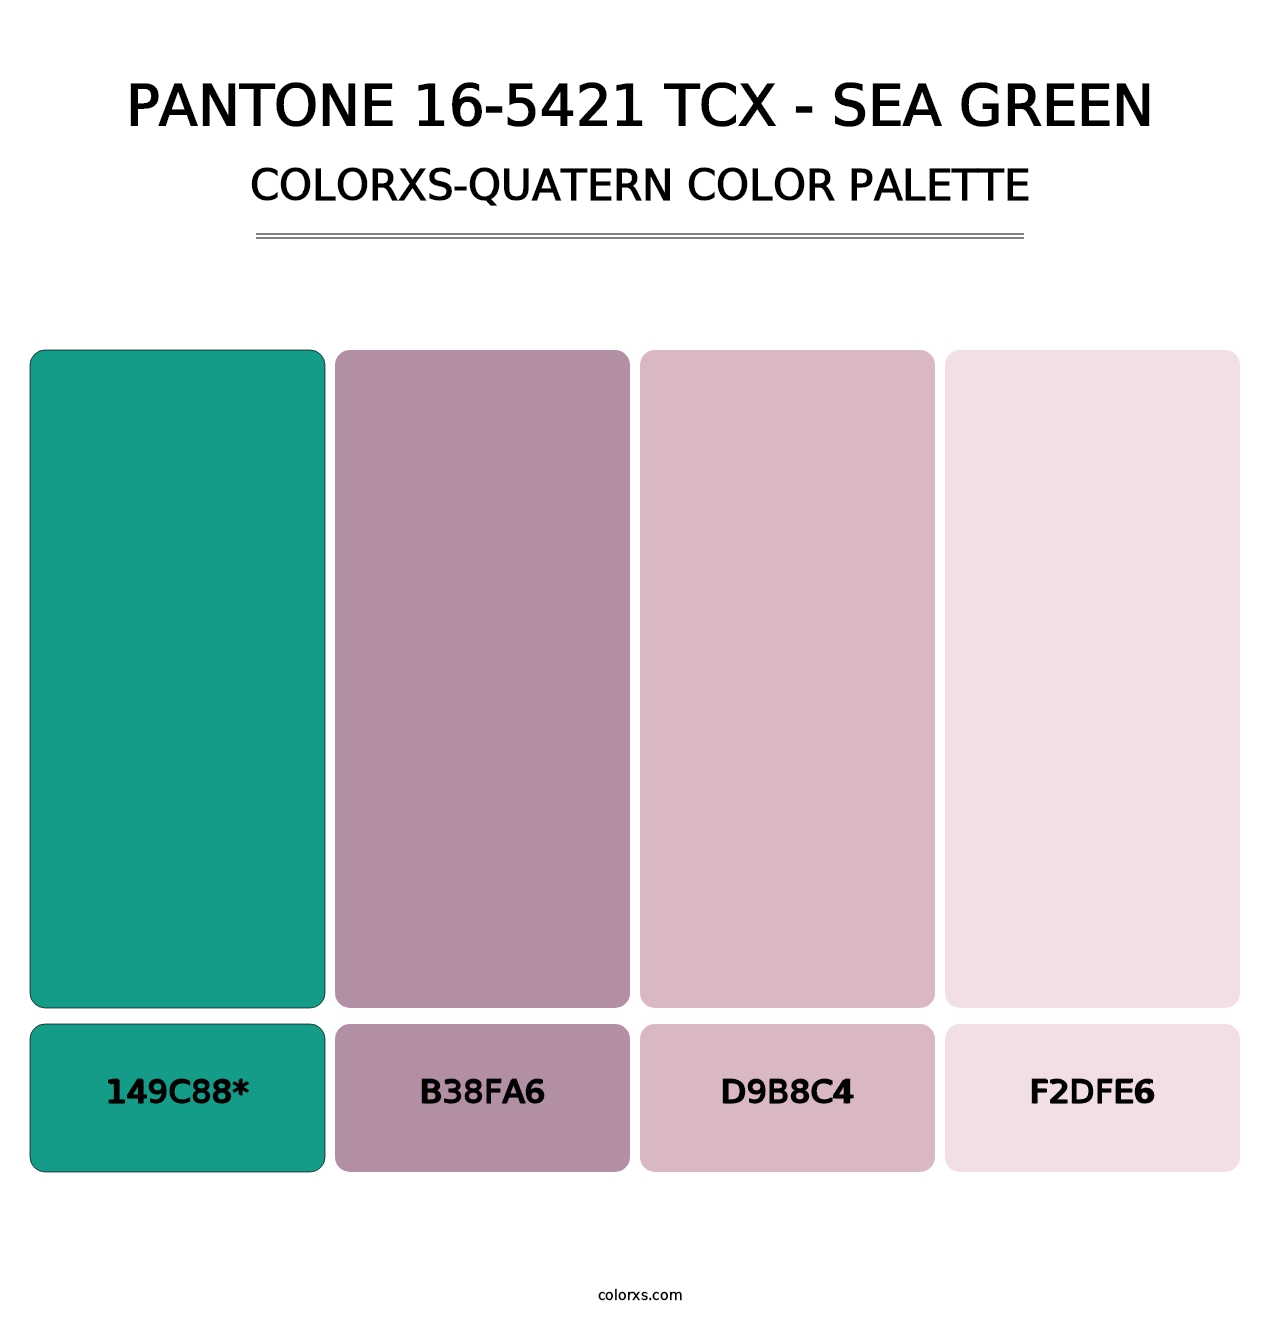 PANTONE 16-5421 TCX - Sea Green - Colorxs Quatern Palette